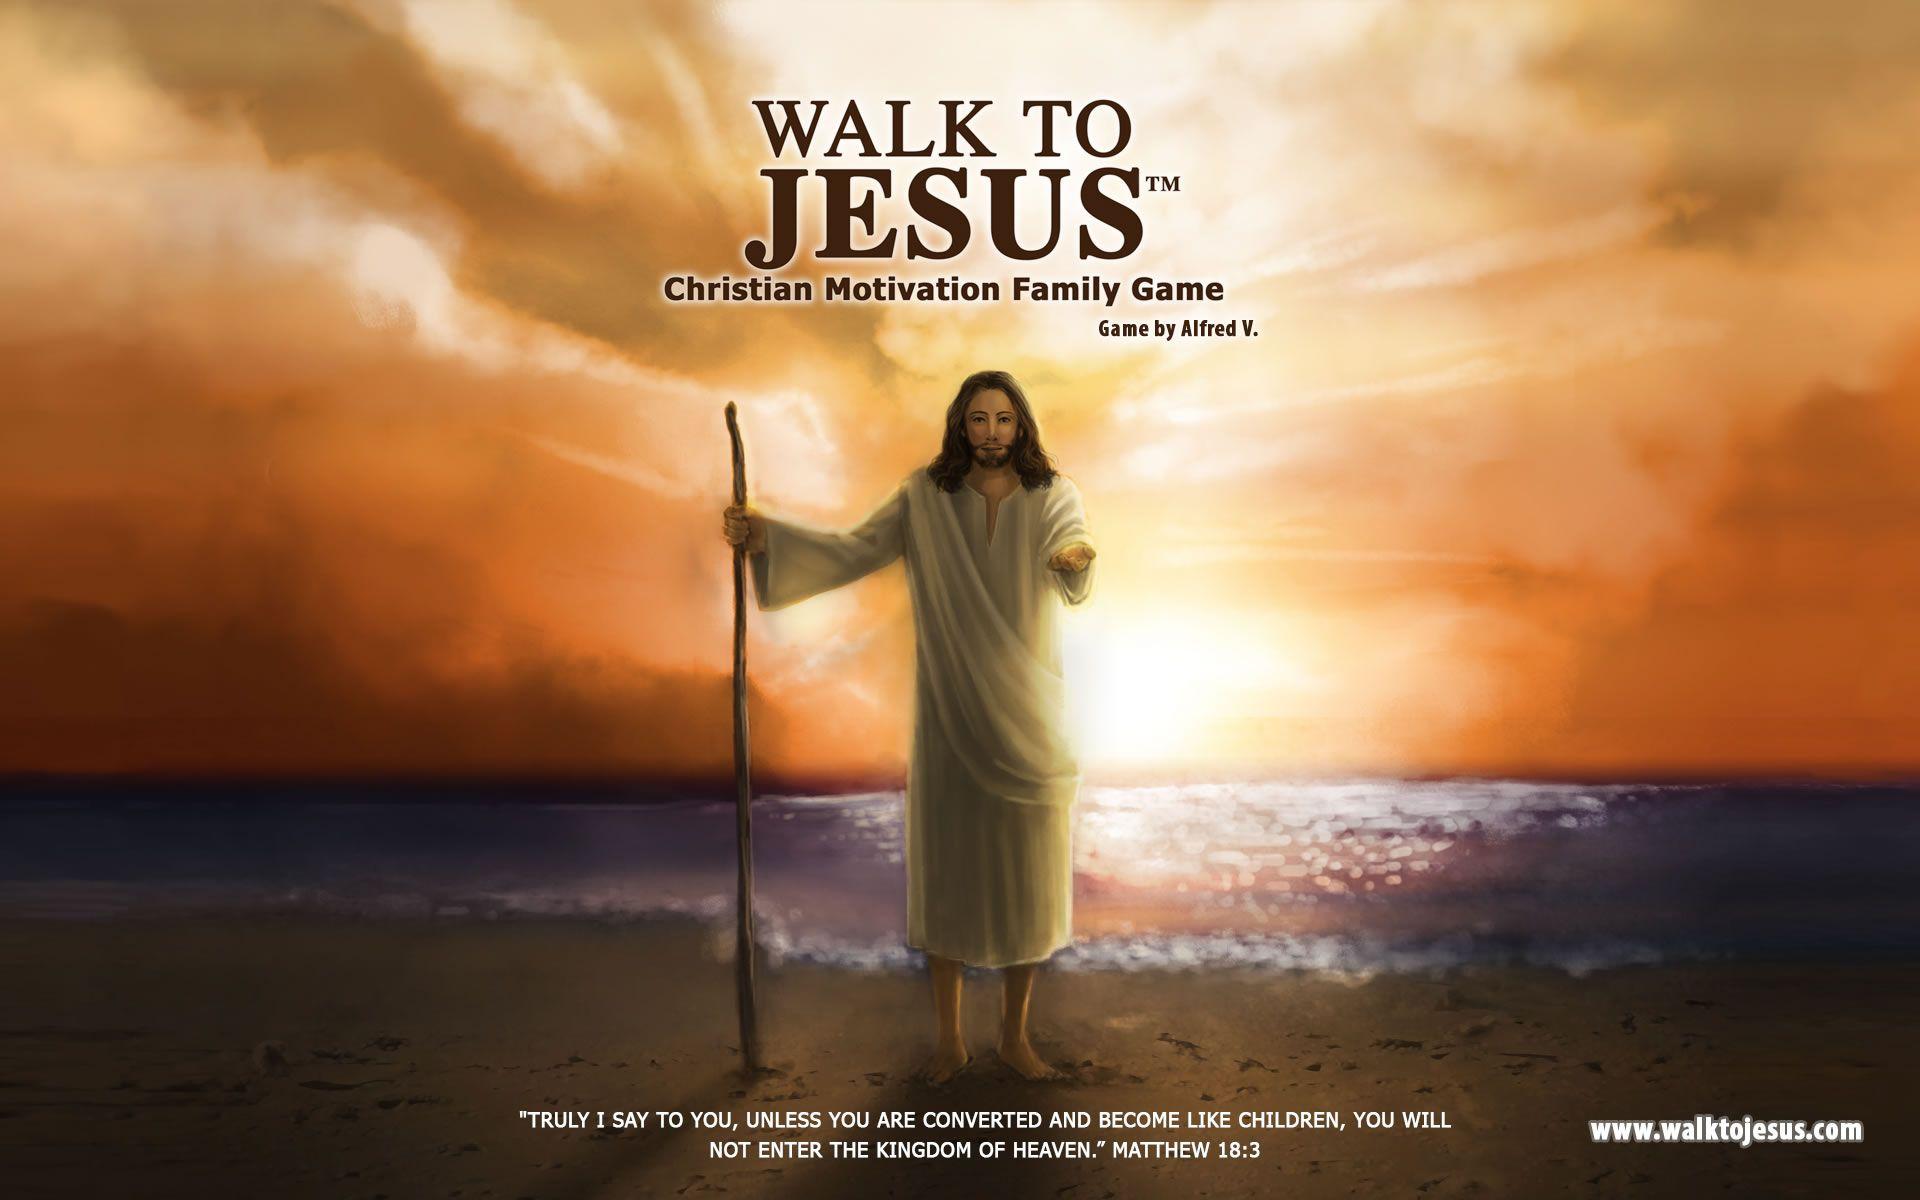 Walk to Jesus Fan Club to Jesus ™. Walk to Jesus ™